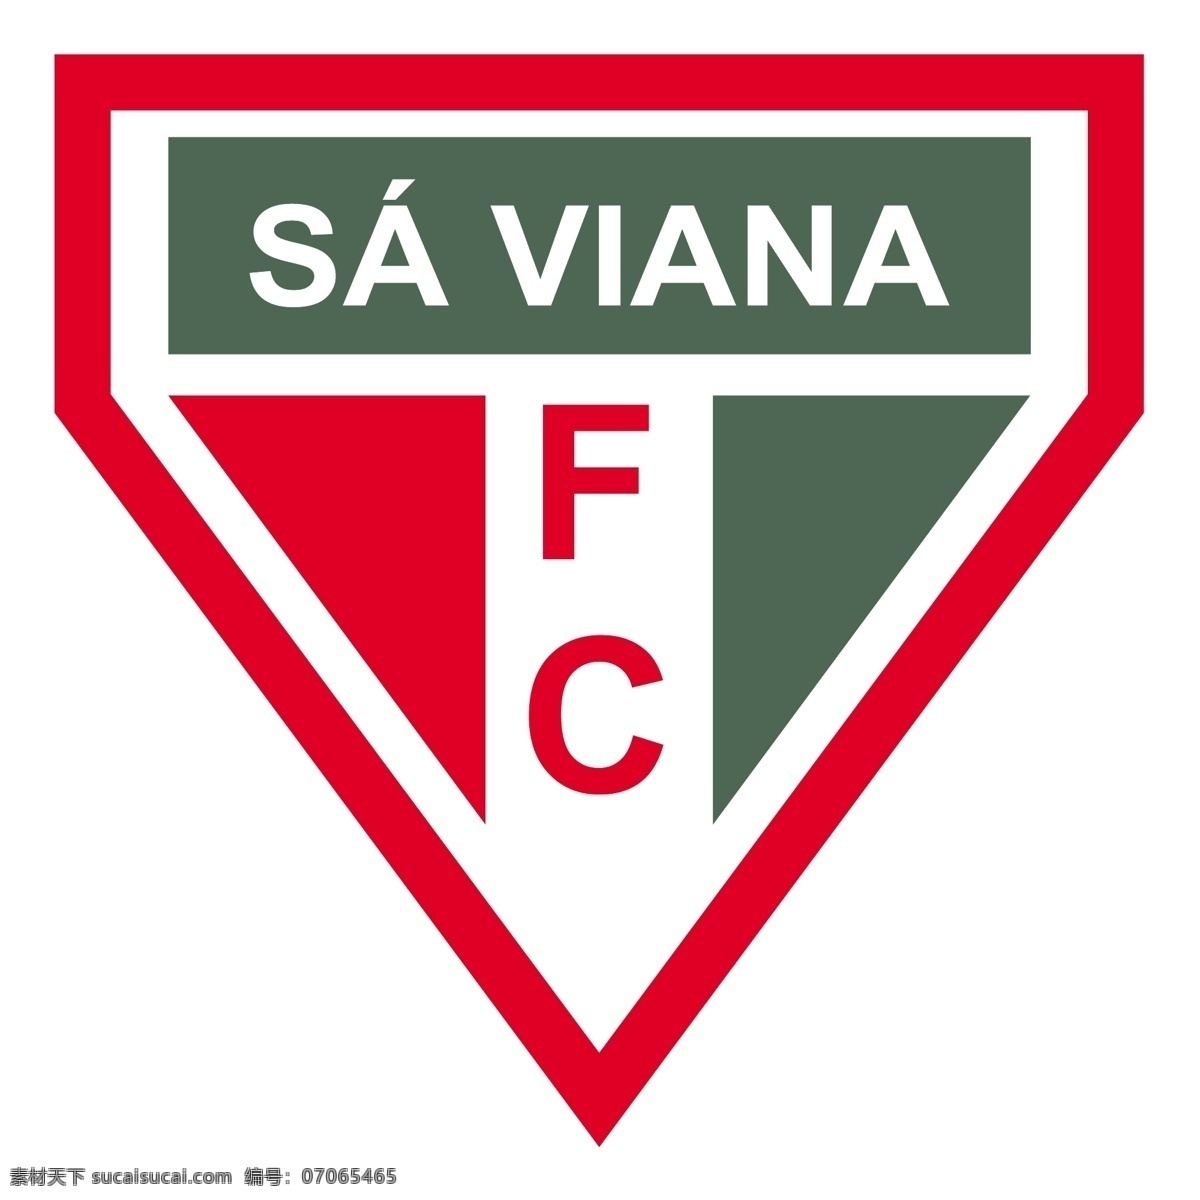 足球 俱乐部 德 乌鲁 瓜 亚纳 rs 维亚纳 免费 sa 标志 psd源文件 logo设计